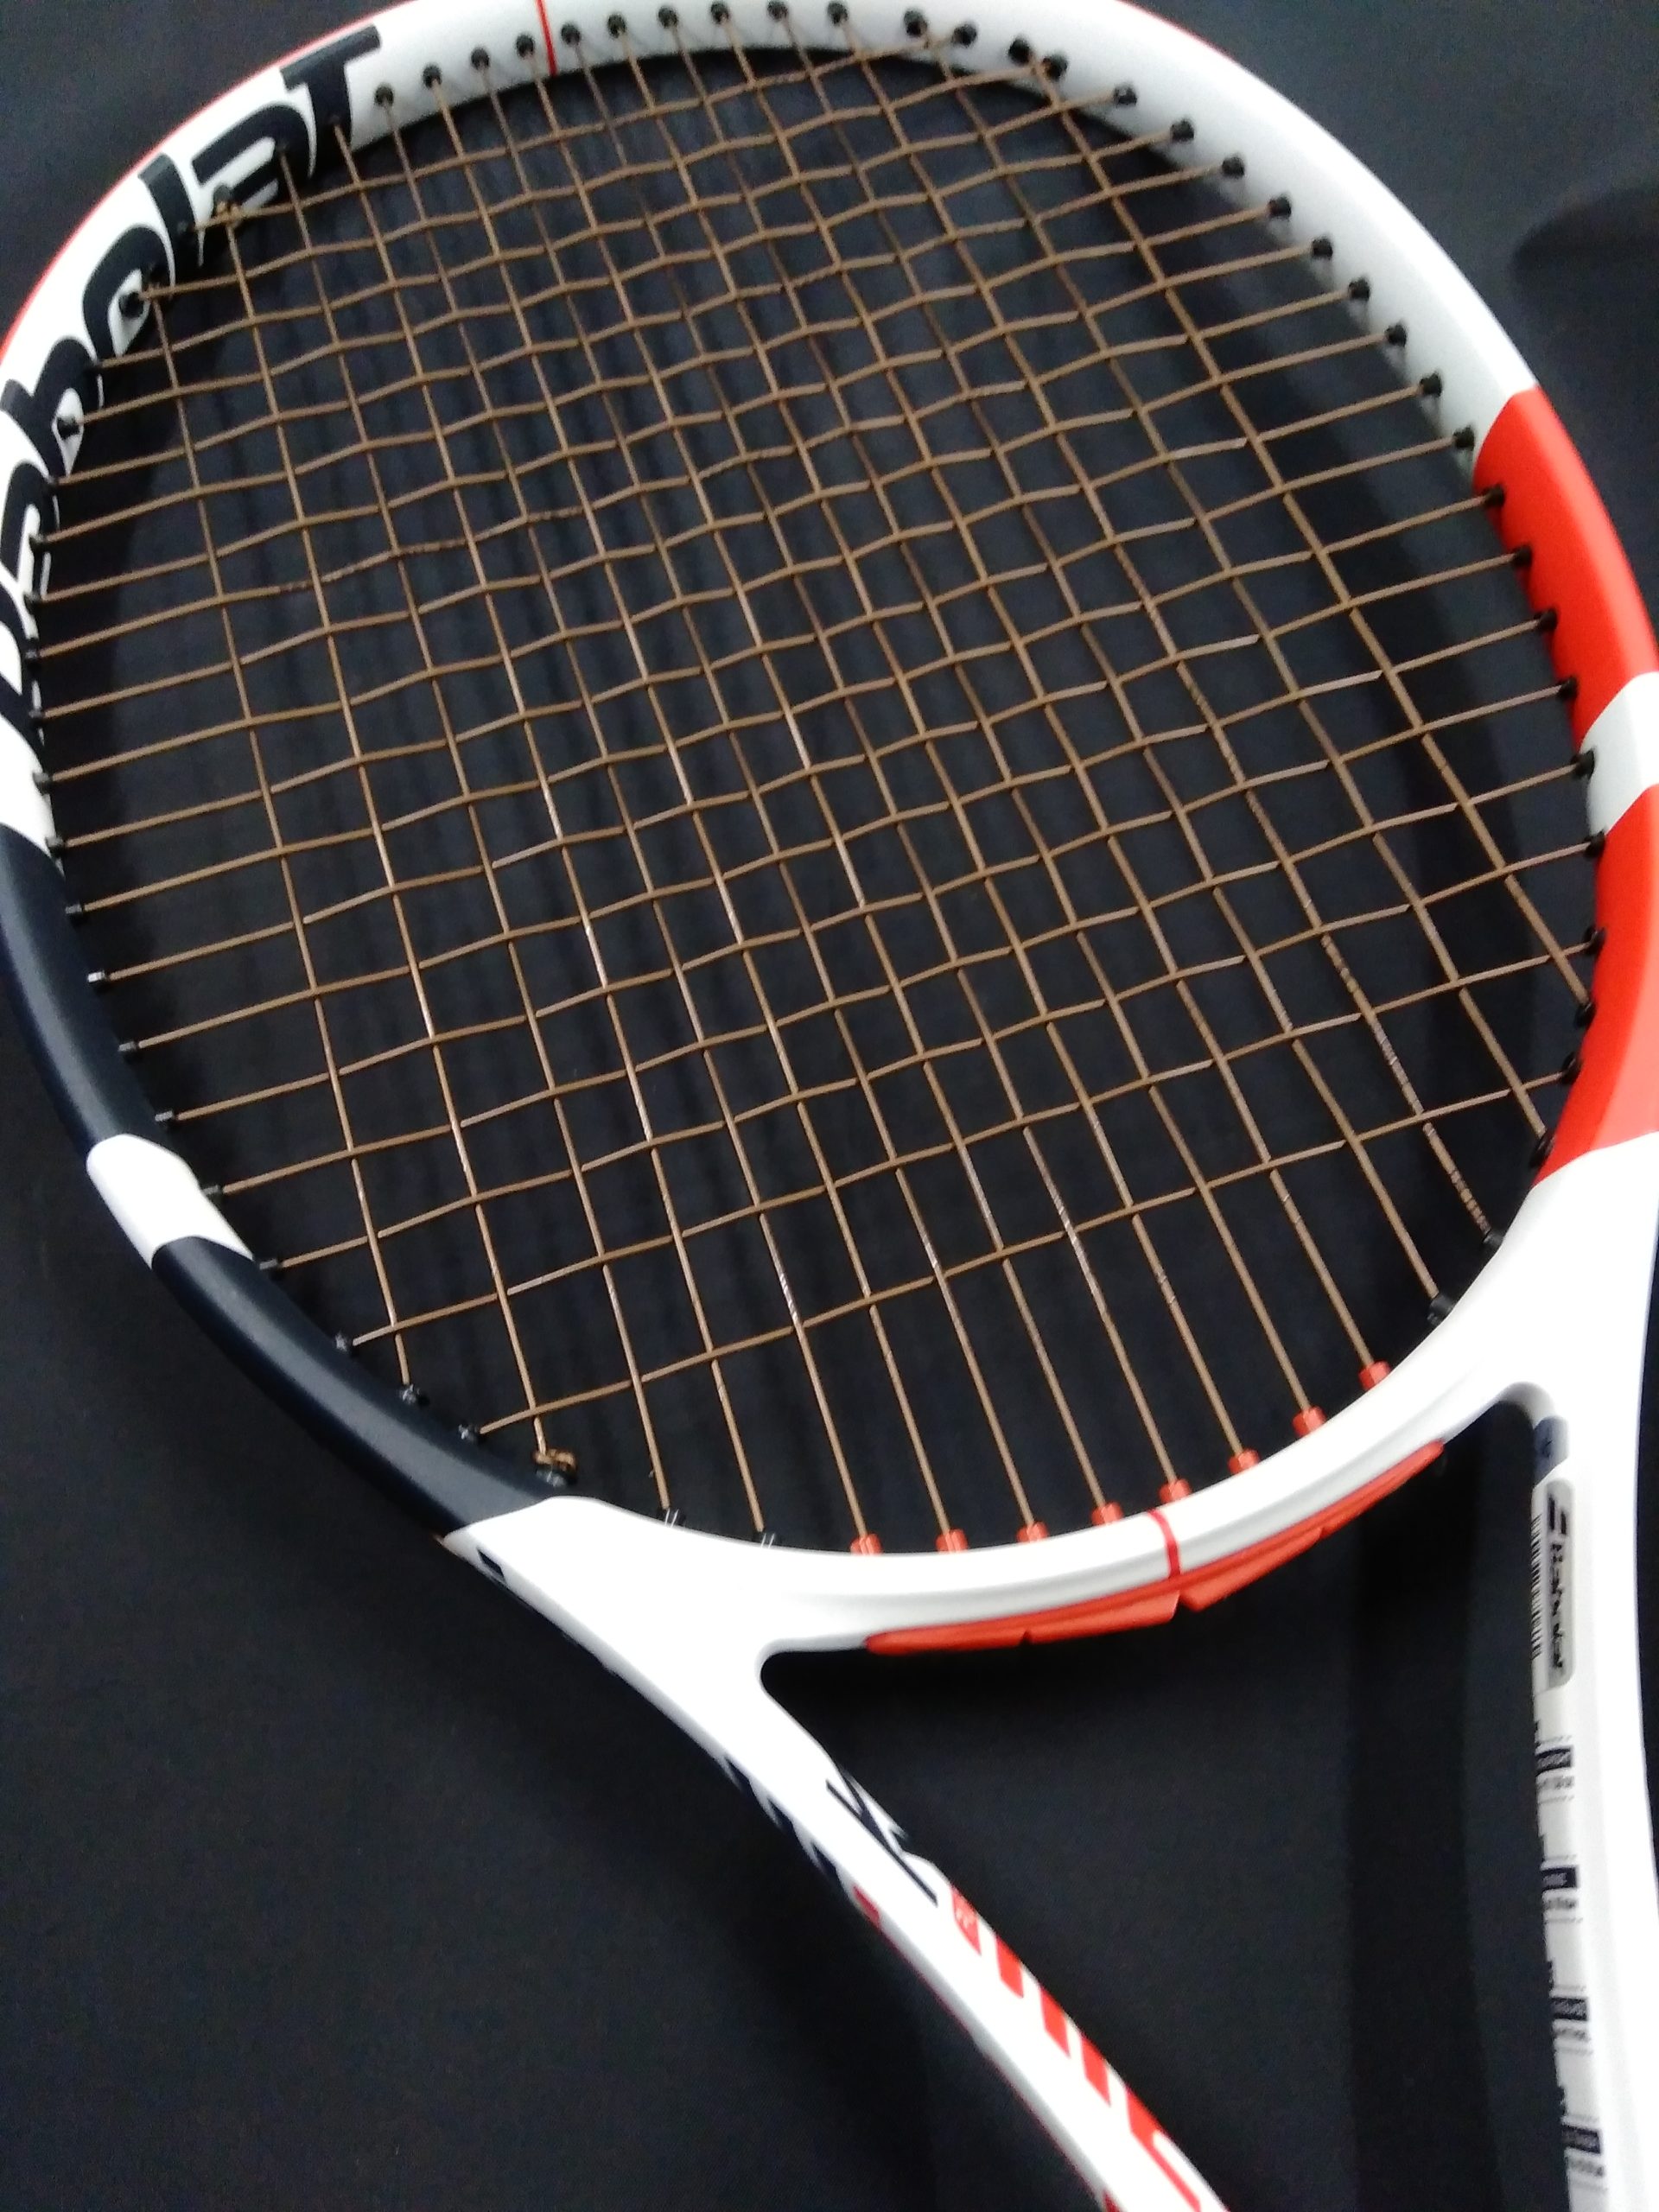 バボラ(Babolat) RPMパワー (Power) 125/17 200m - テニス